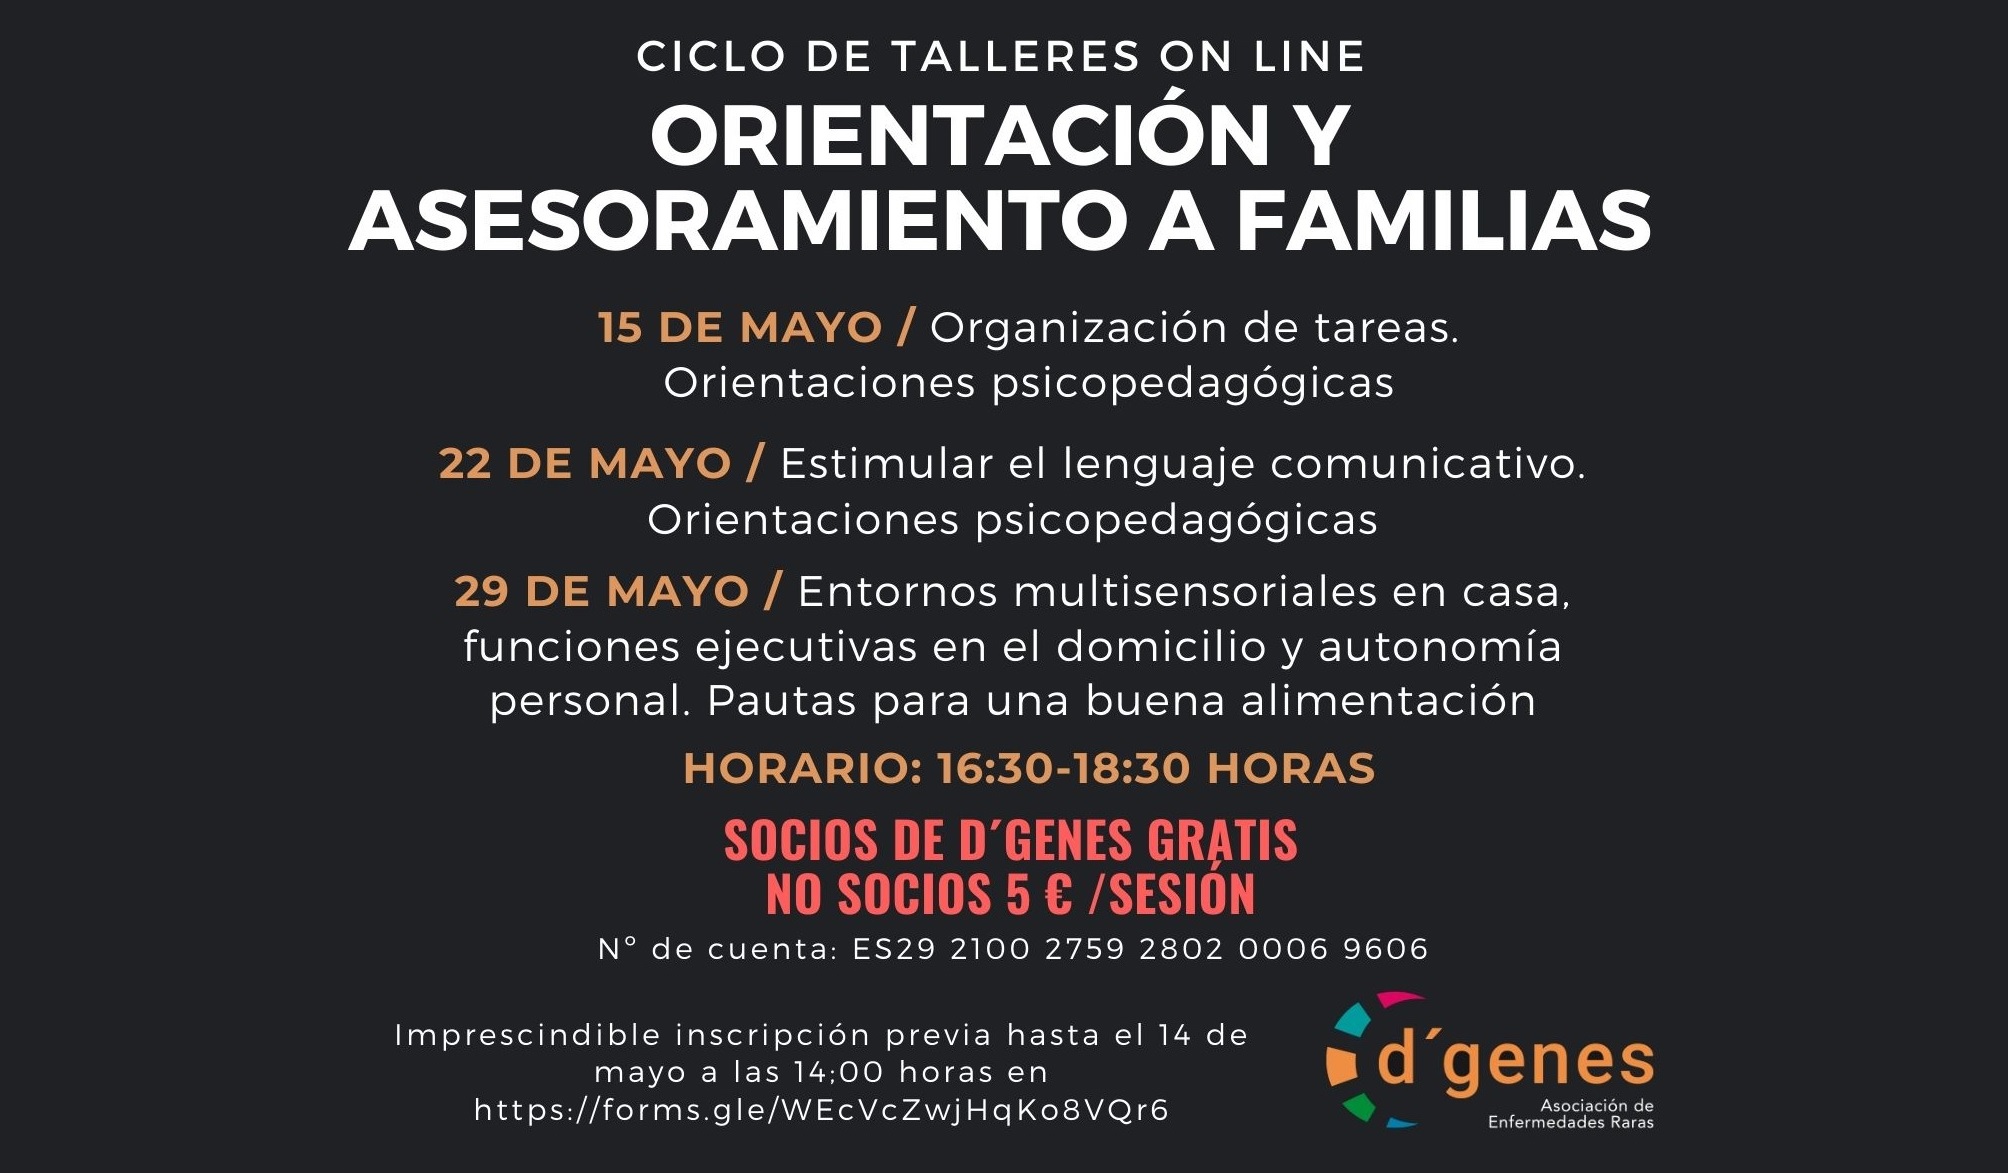 D´Genes organiza un ciclo de talleres on line sobre Orientación y  asesoramiento a familias con tres sesiones los días 15, 22 y 29 de mayo |  Dgenes